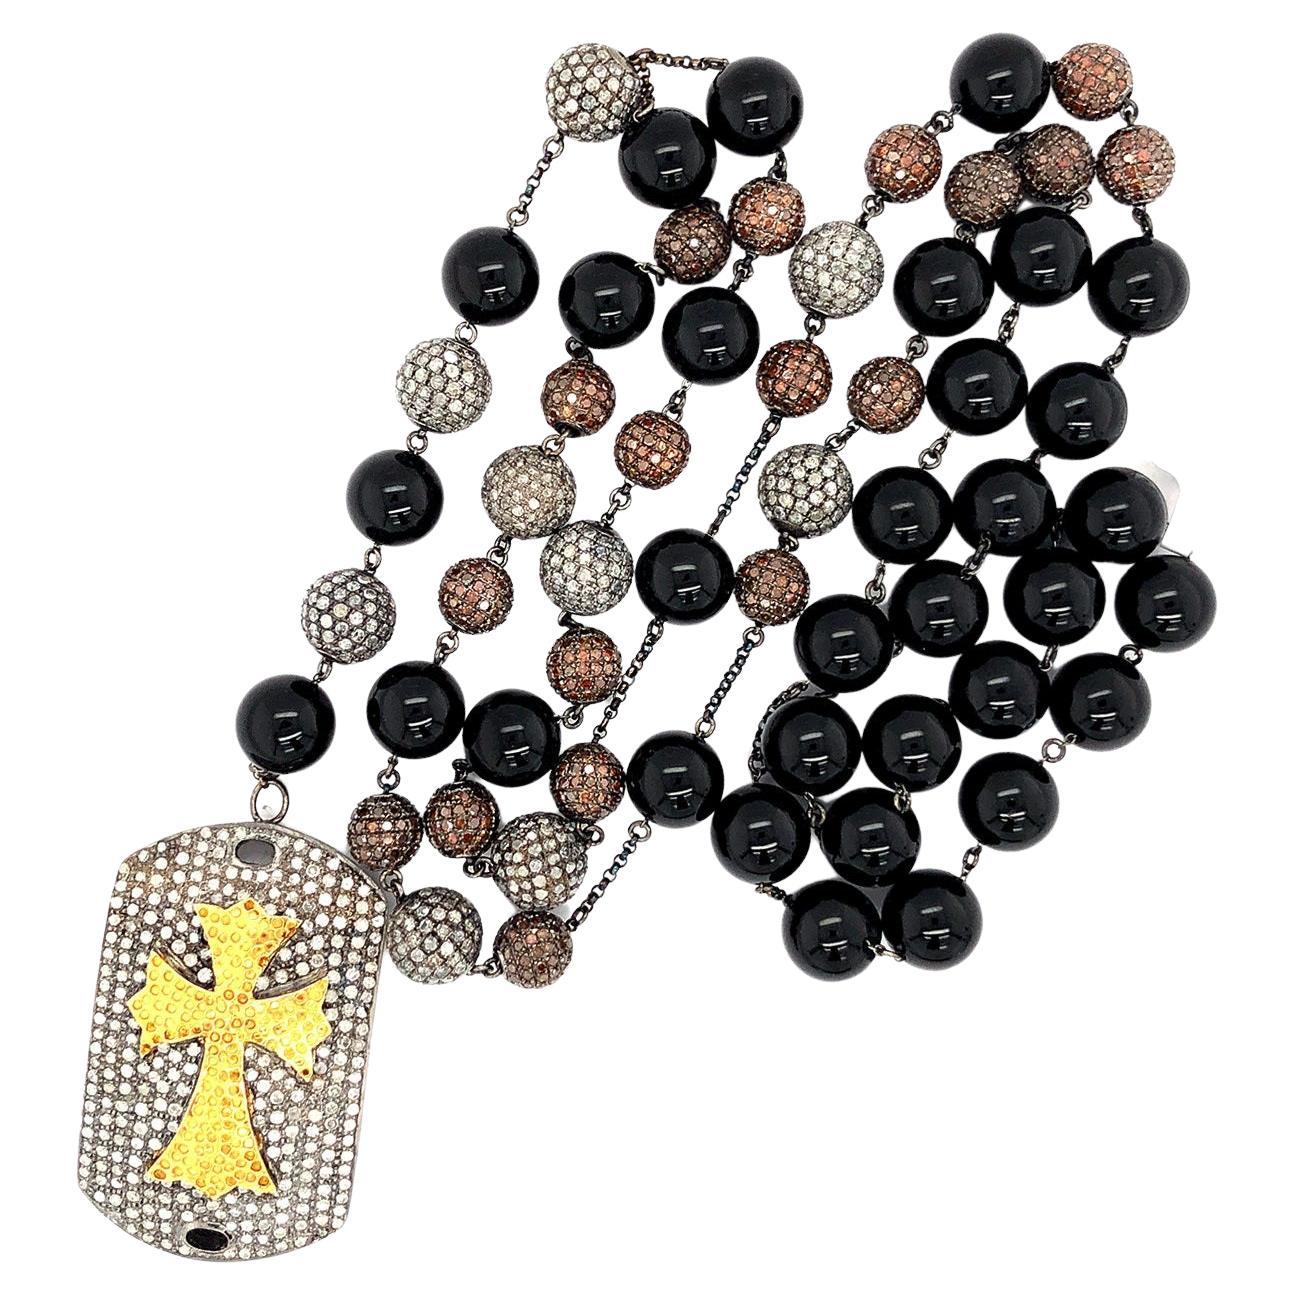 Collier de perles d'onyx et de diamants avec pendentif en forme de croix, en or et argent